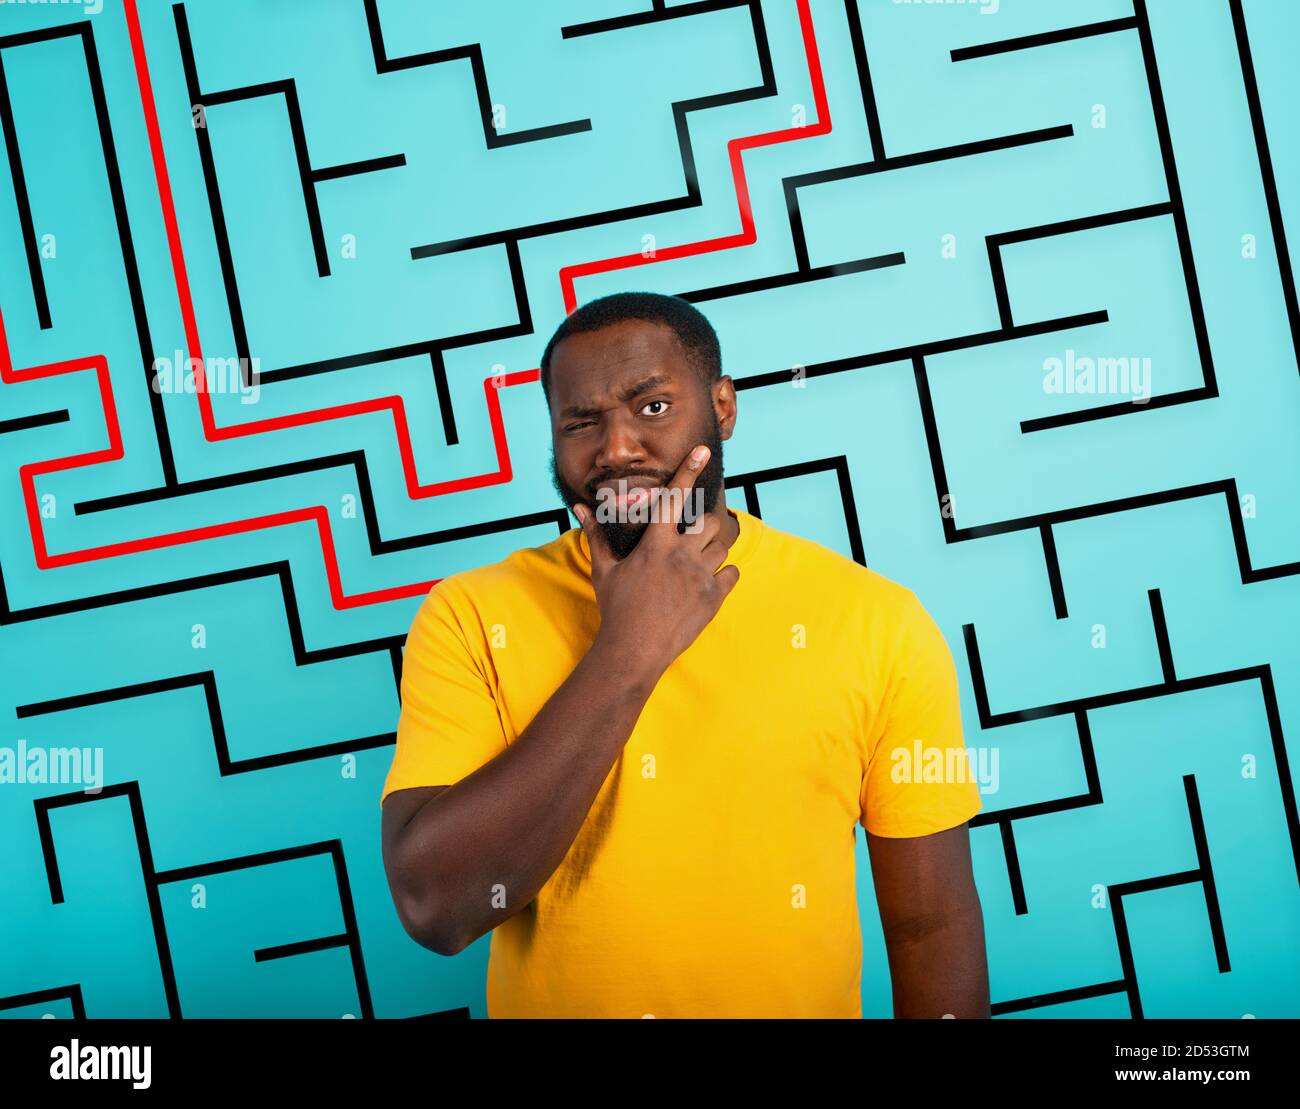 L'uomo confuso ha un grande labirinto da risolvere. Concetto di opzioni, confusione, decisione. Foto Stock